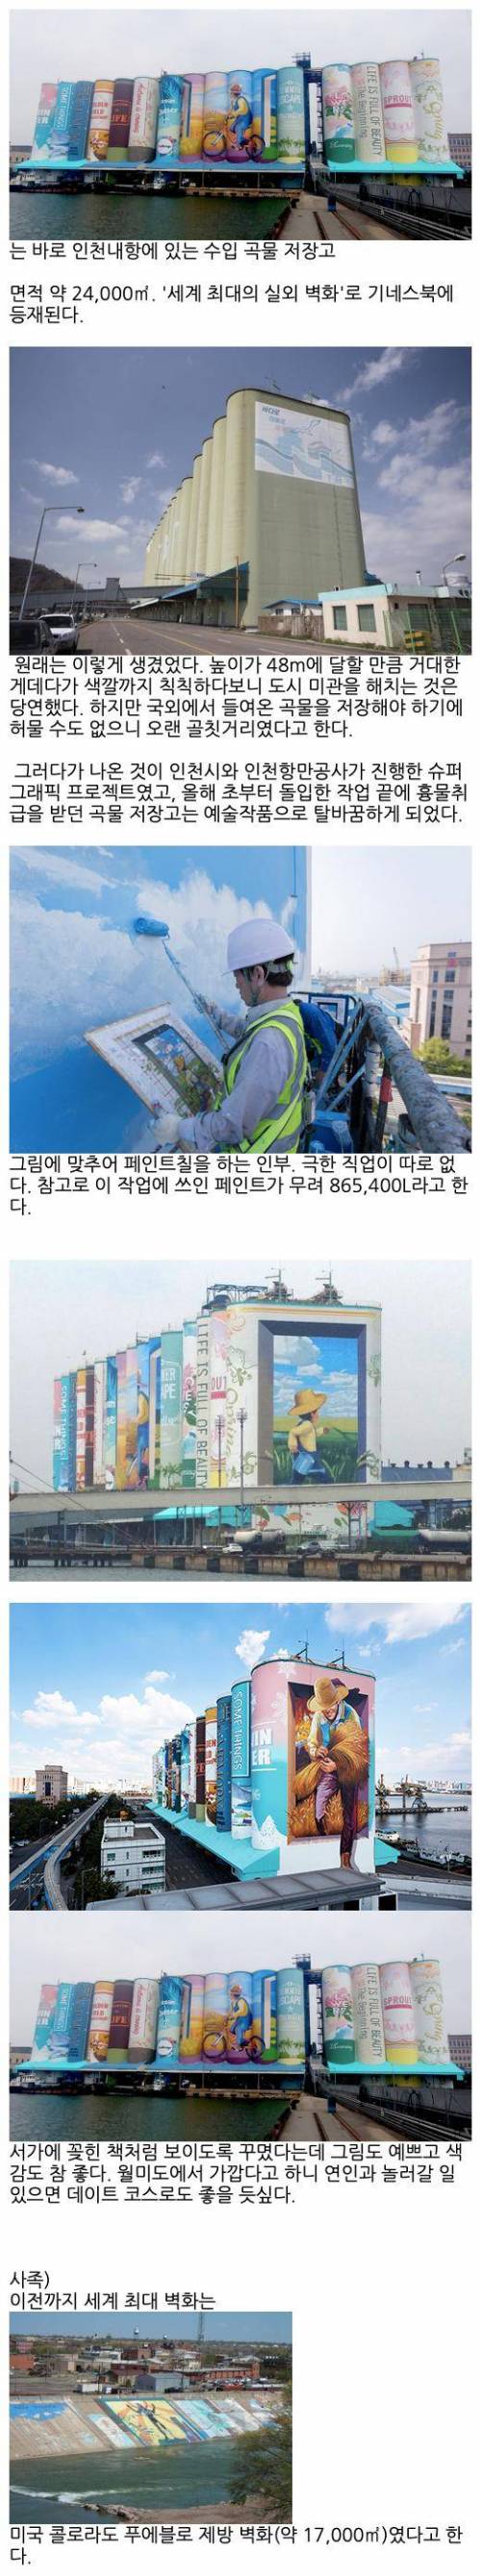 세계에서 가장 큰 벽화.jpg